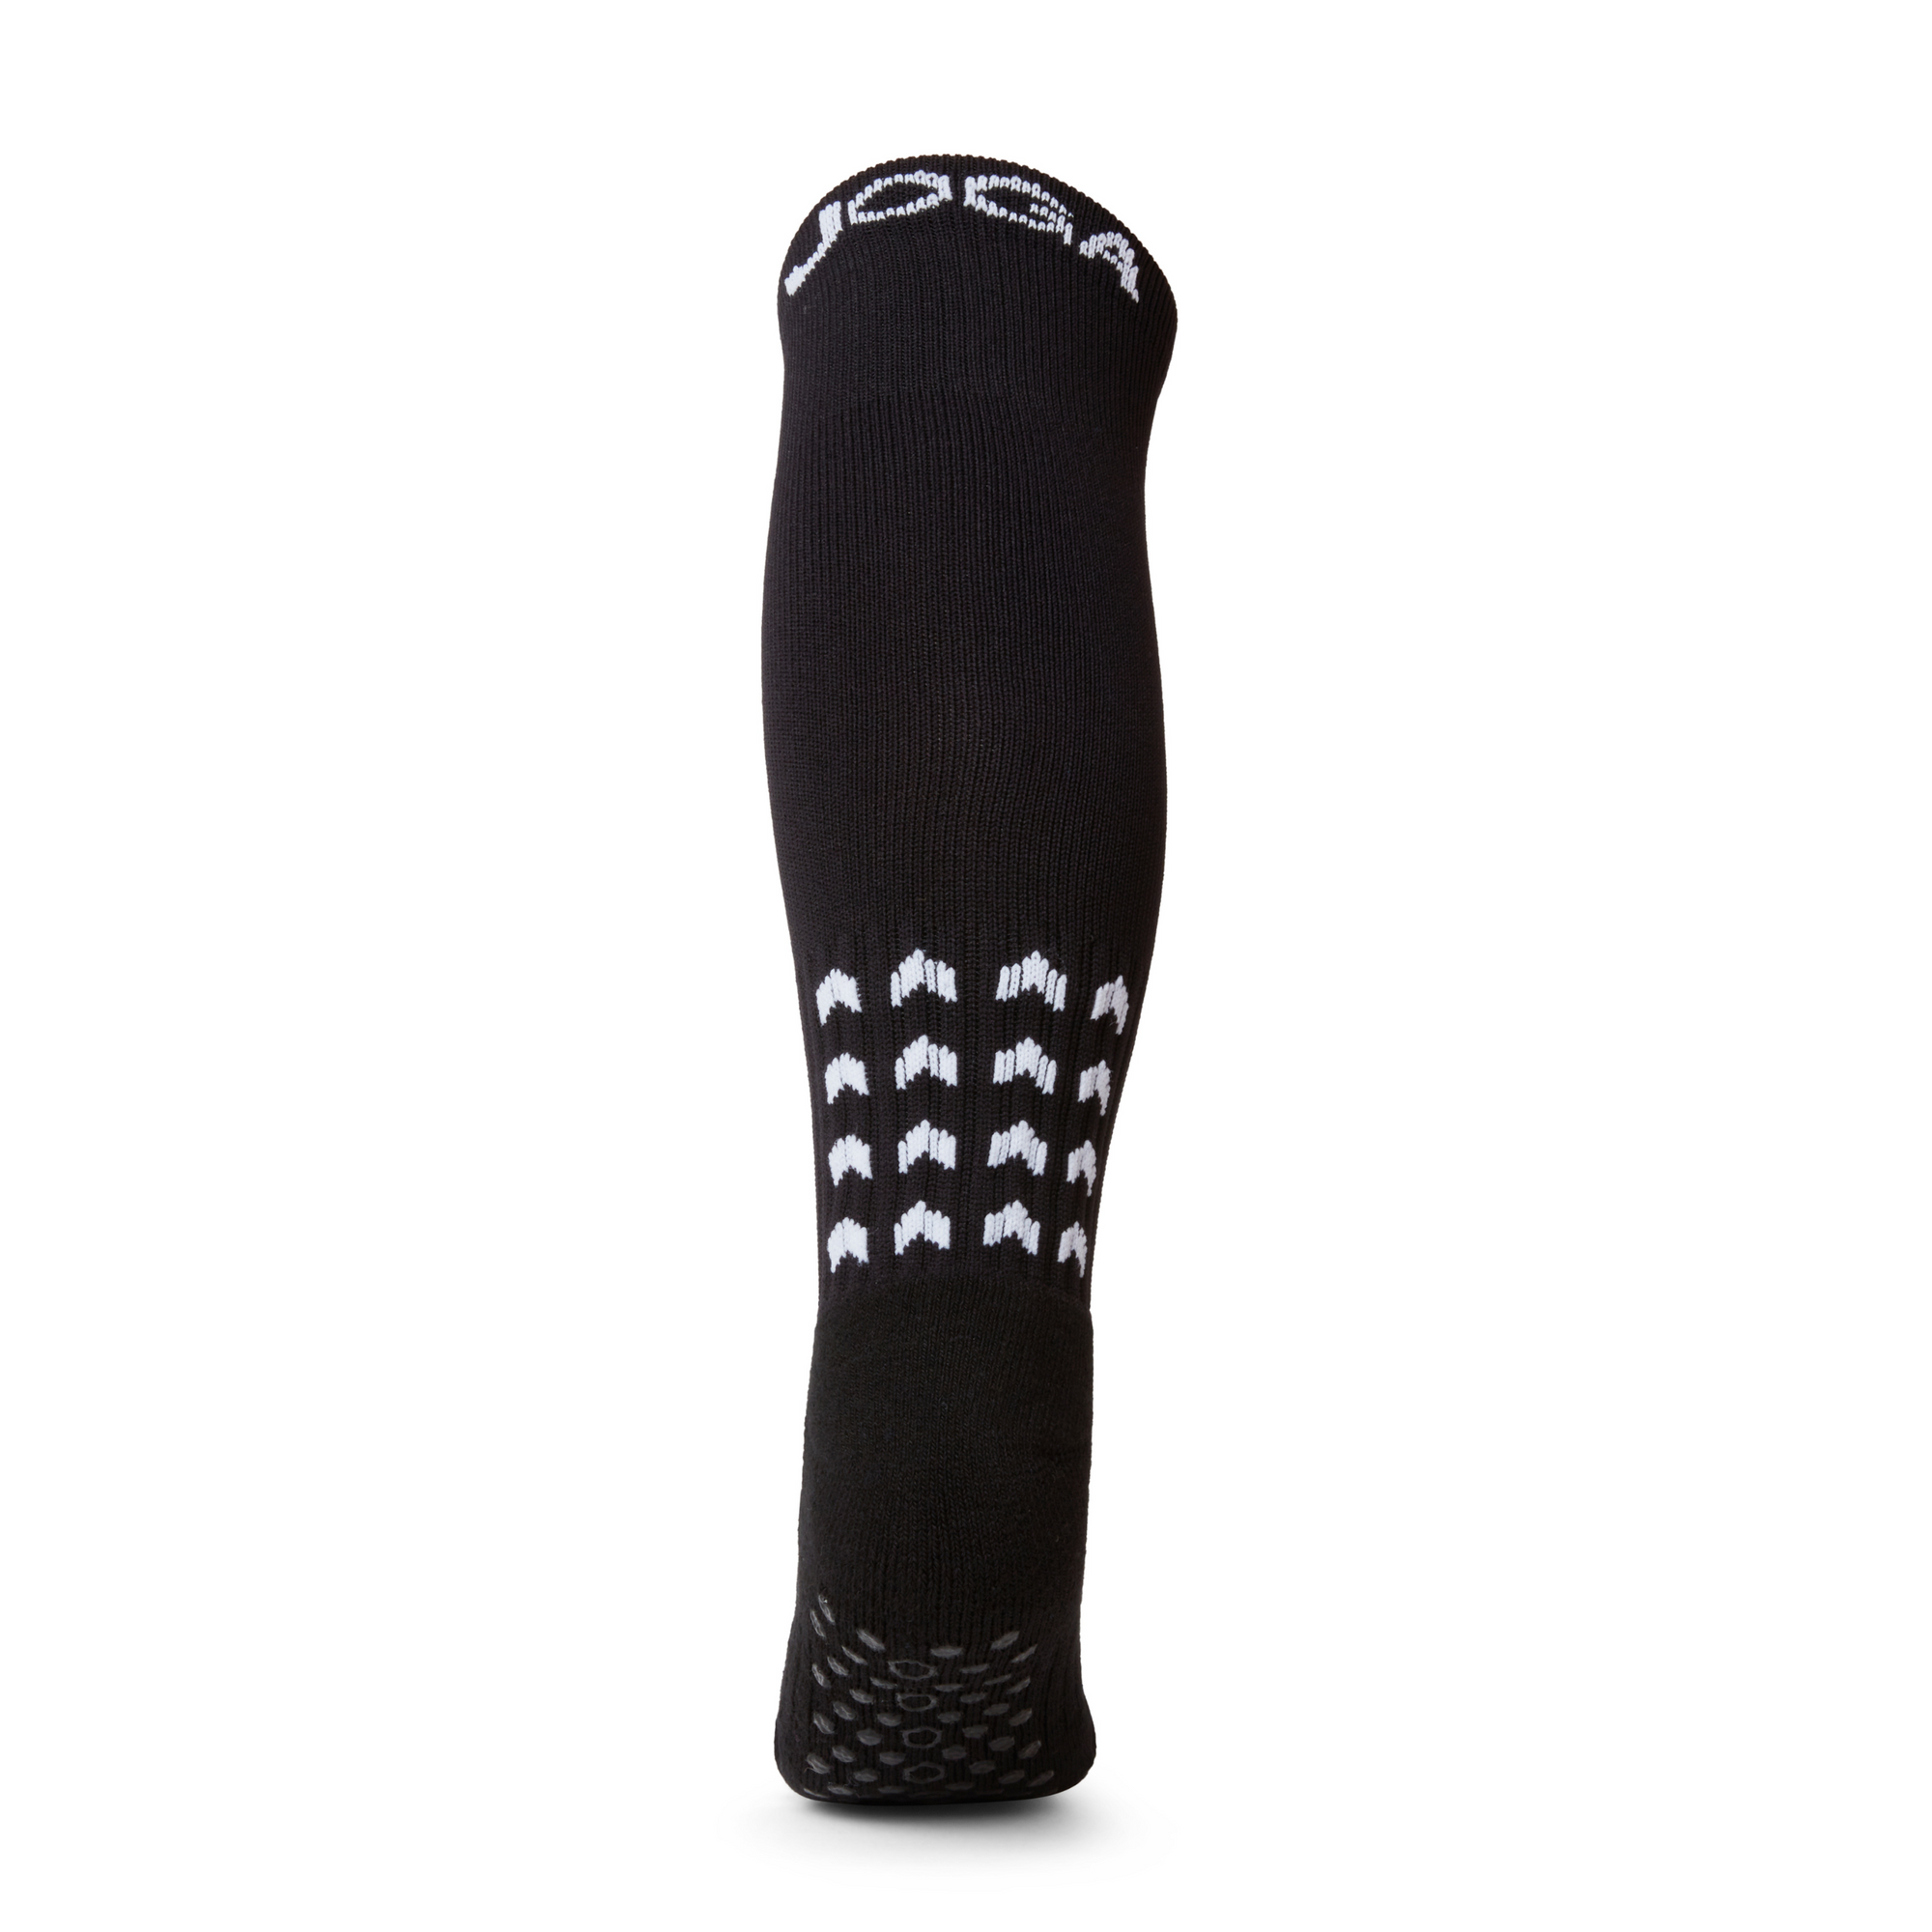 JOGA Starz Full-Length Grip Socks - Black